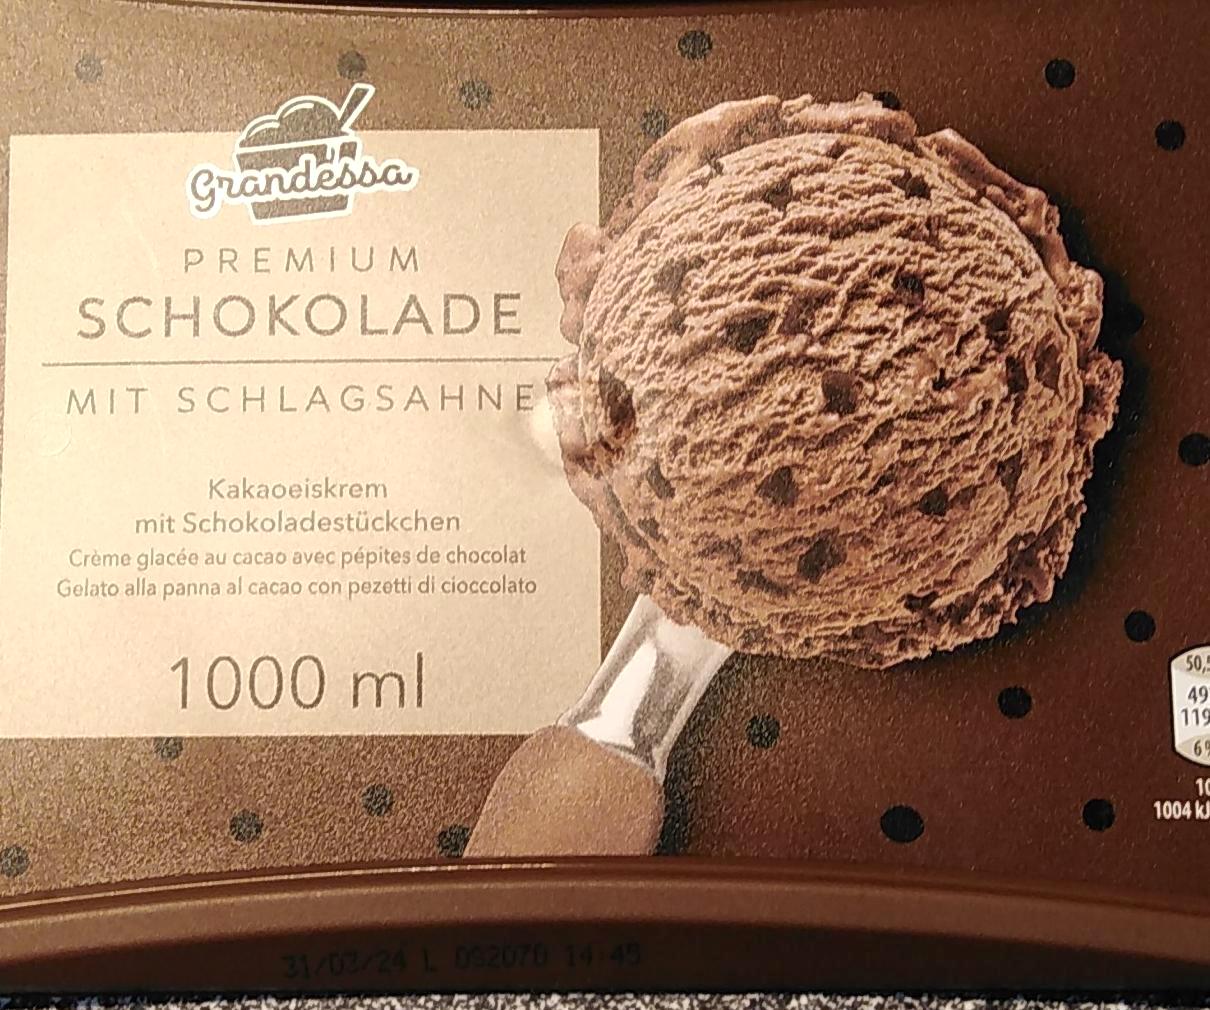 Képek - Prémium csokoládés jégkrém Grandessa